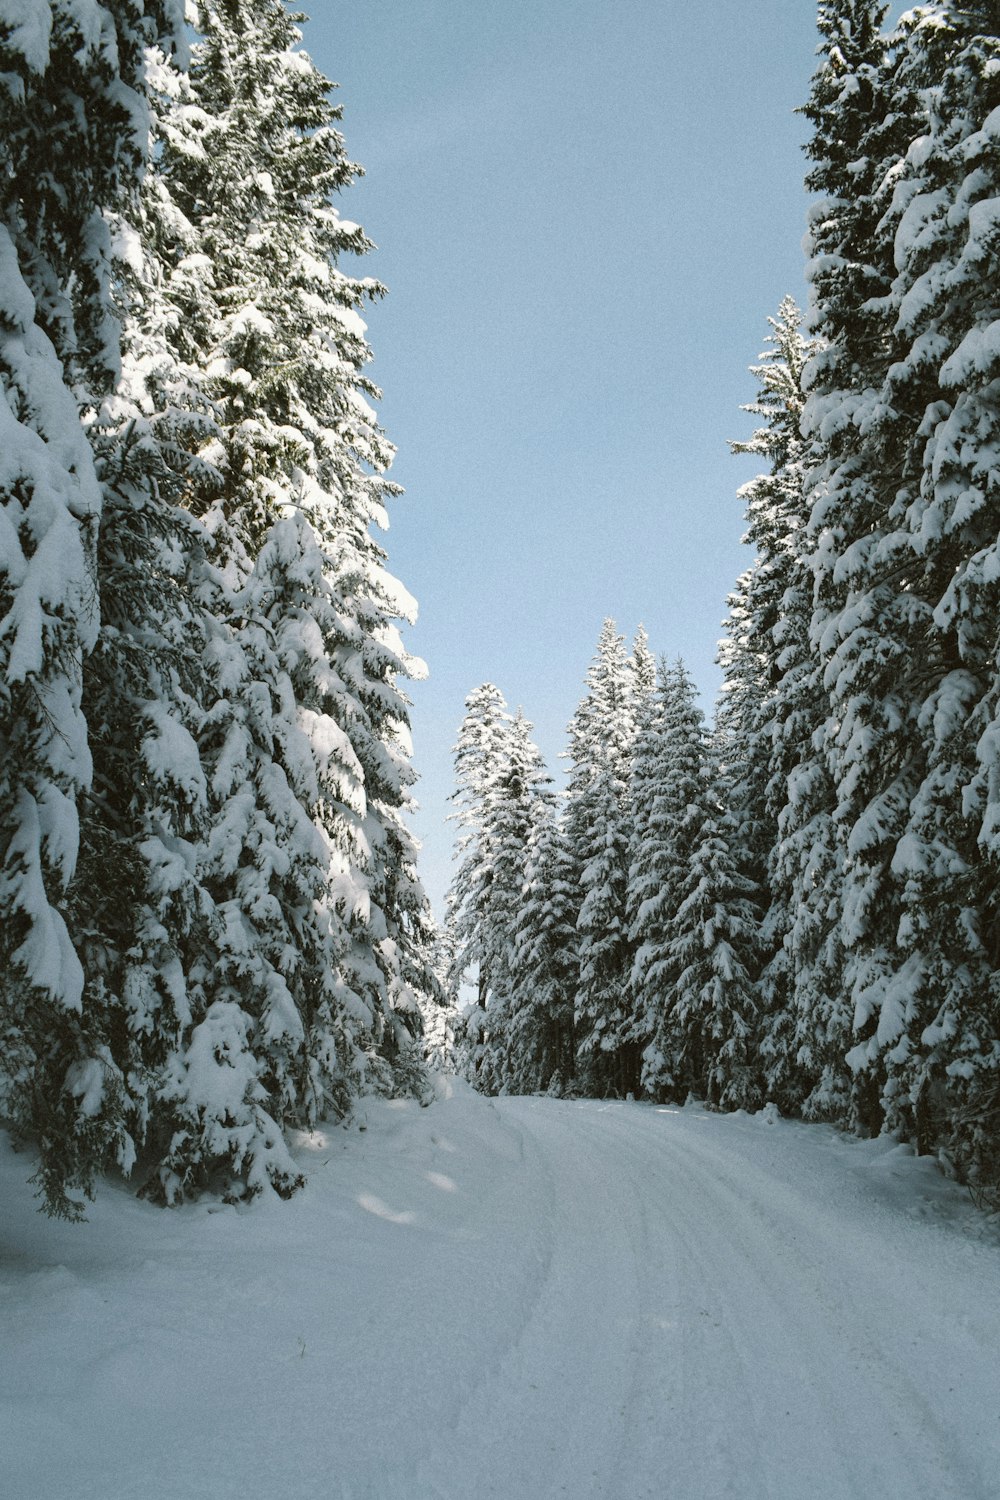 Une personne roule à ski sur une route enneigée